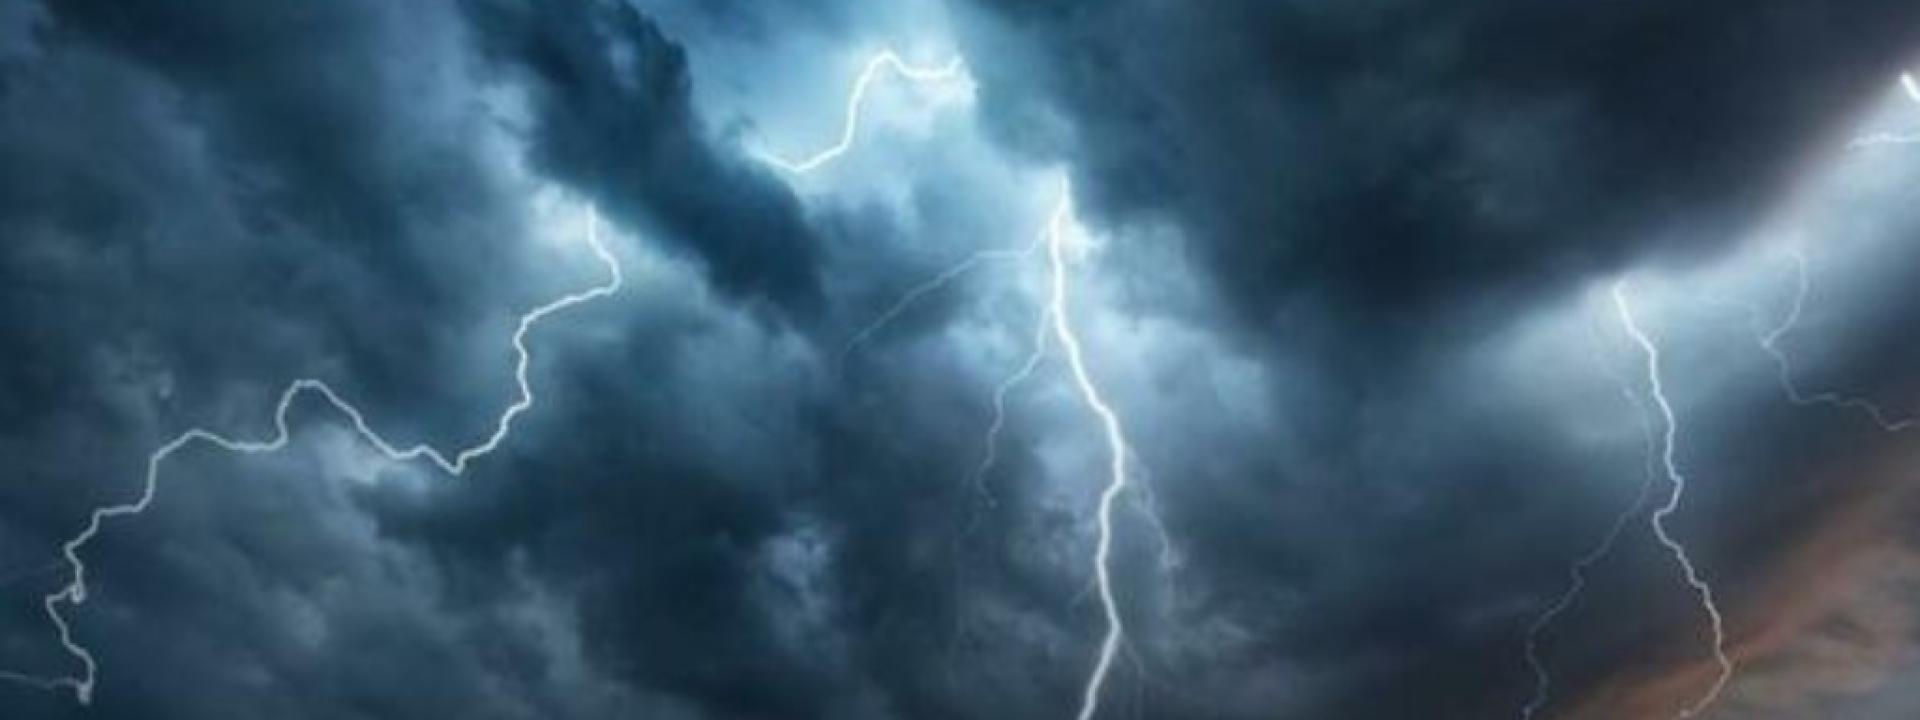 Marche - Nuova allerta meteo per temporali dalle 21 di venerdì